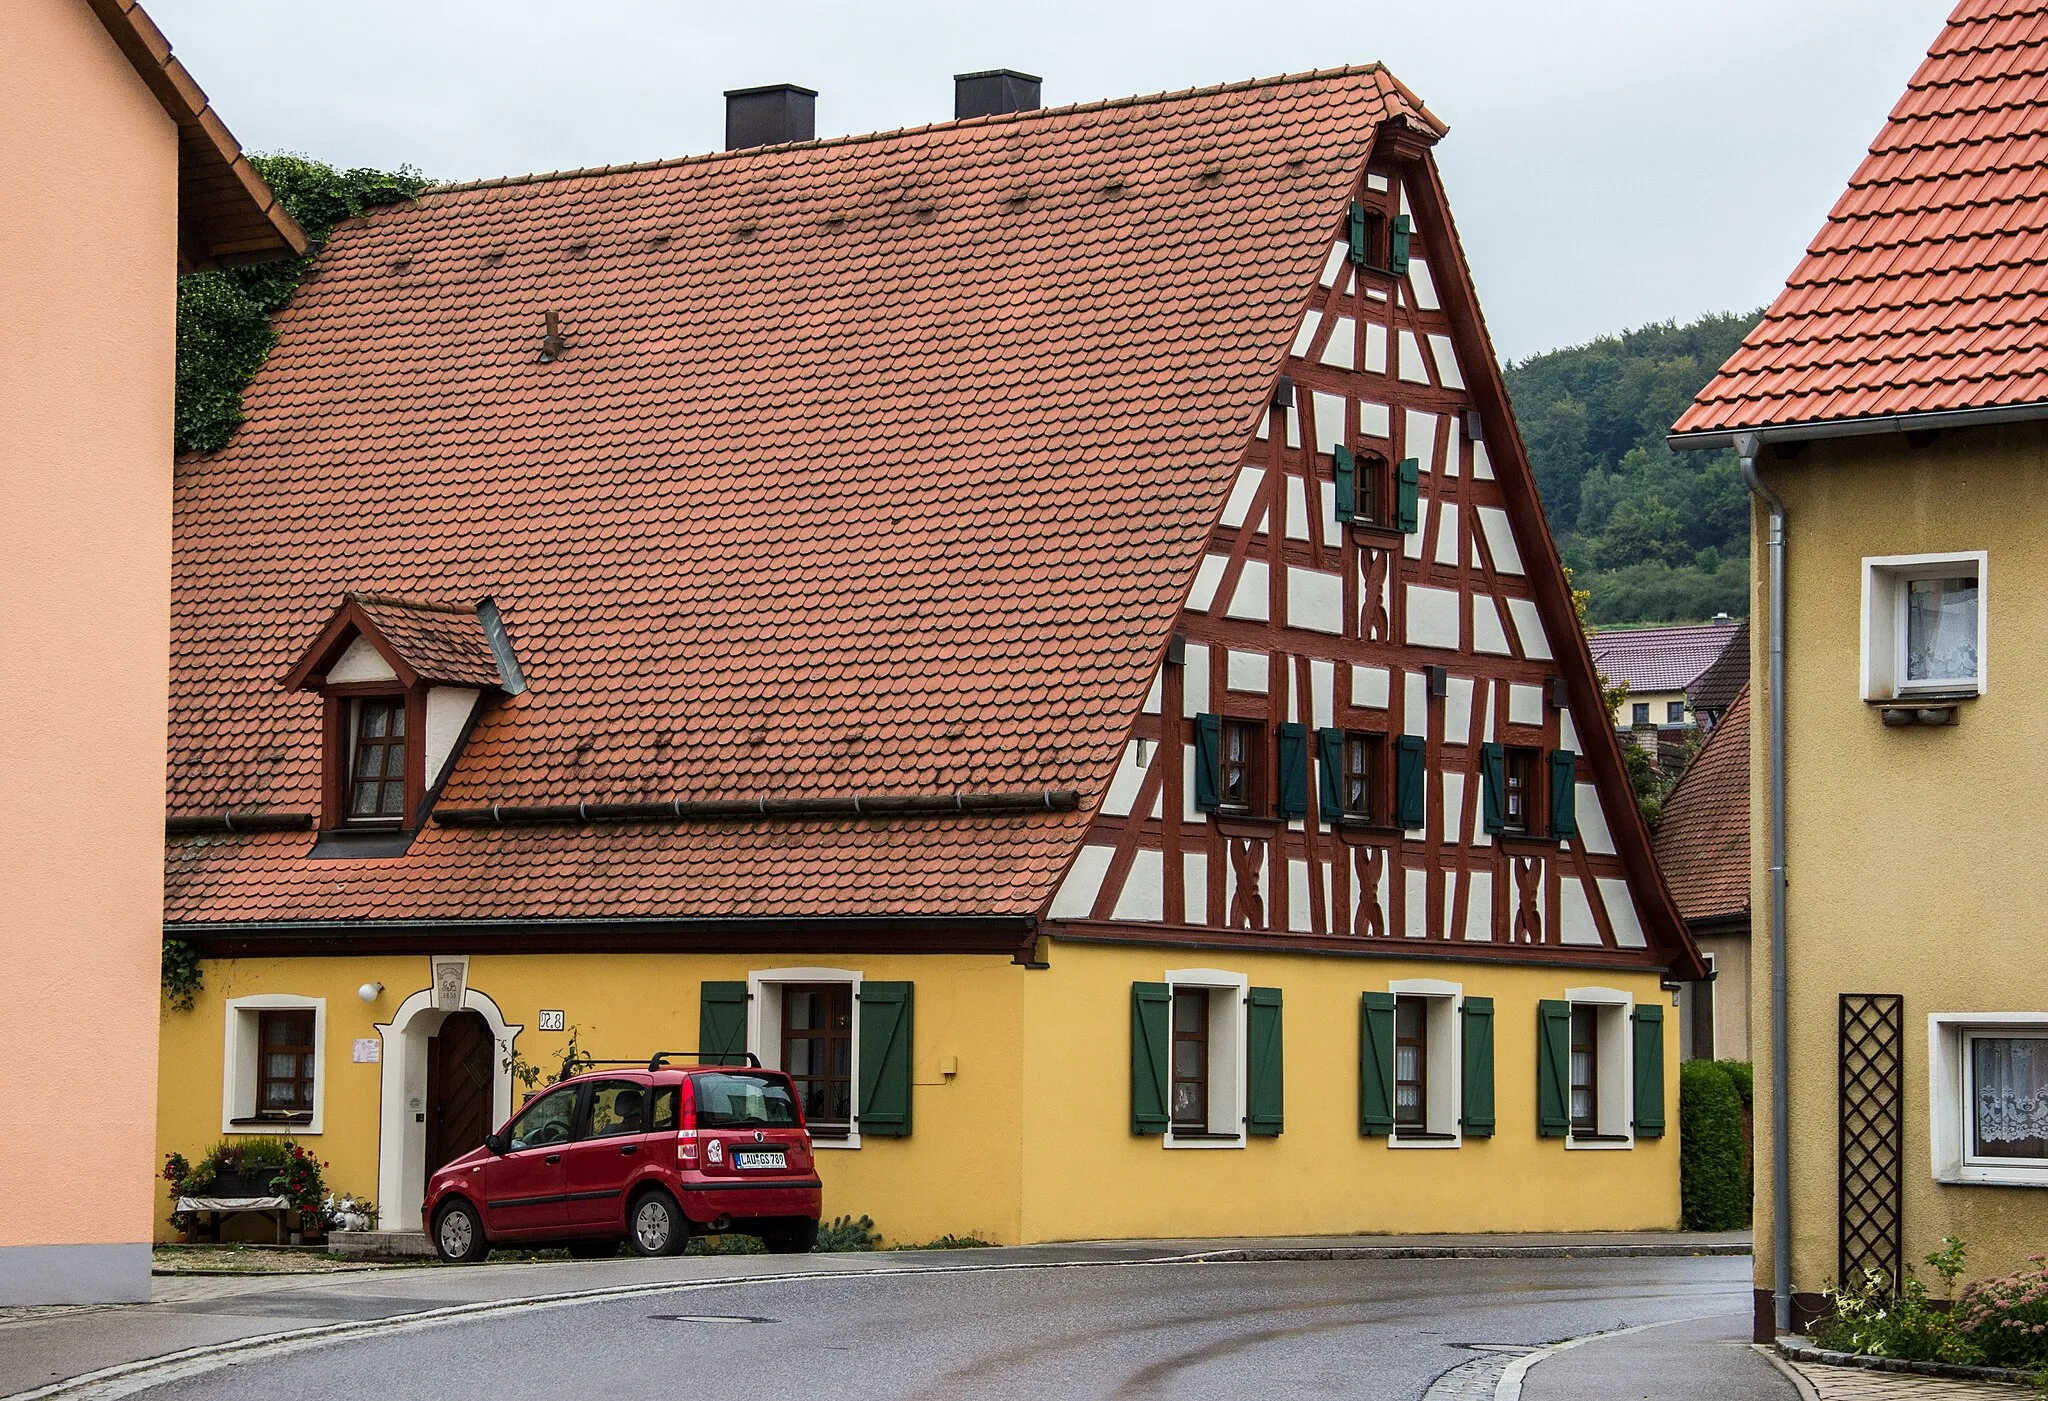 Image of Mittelfranken